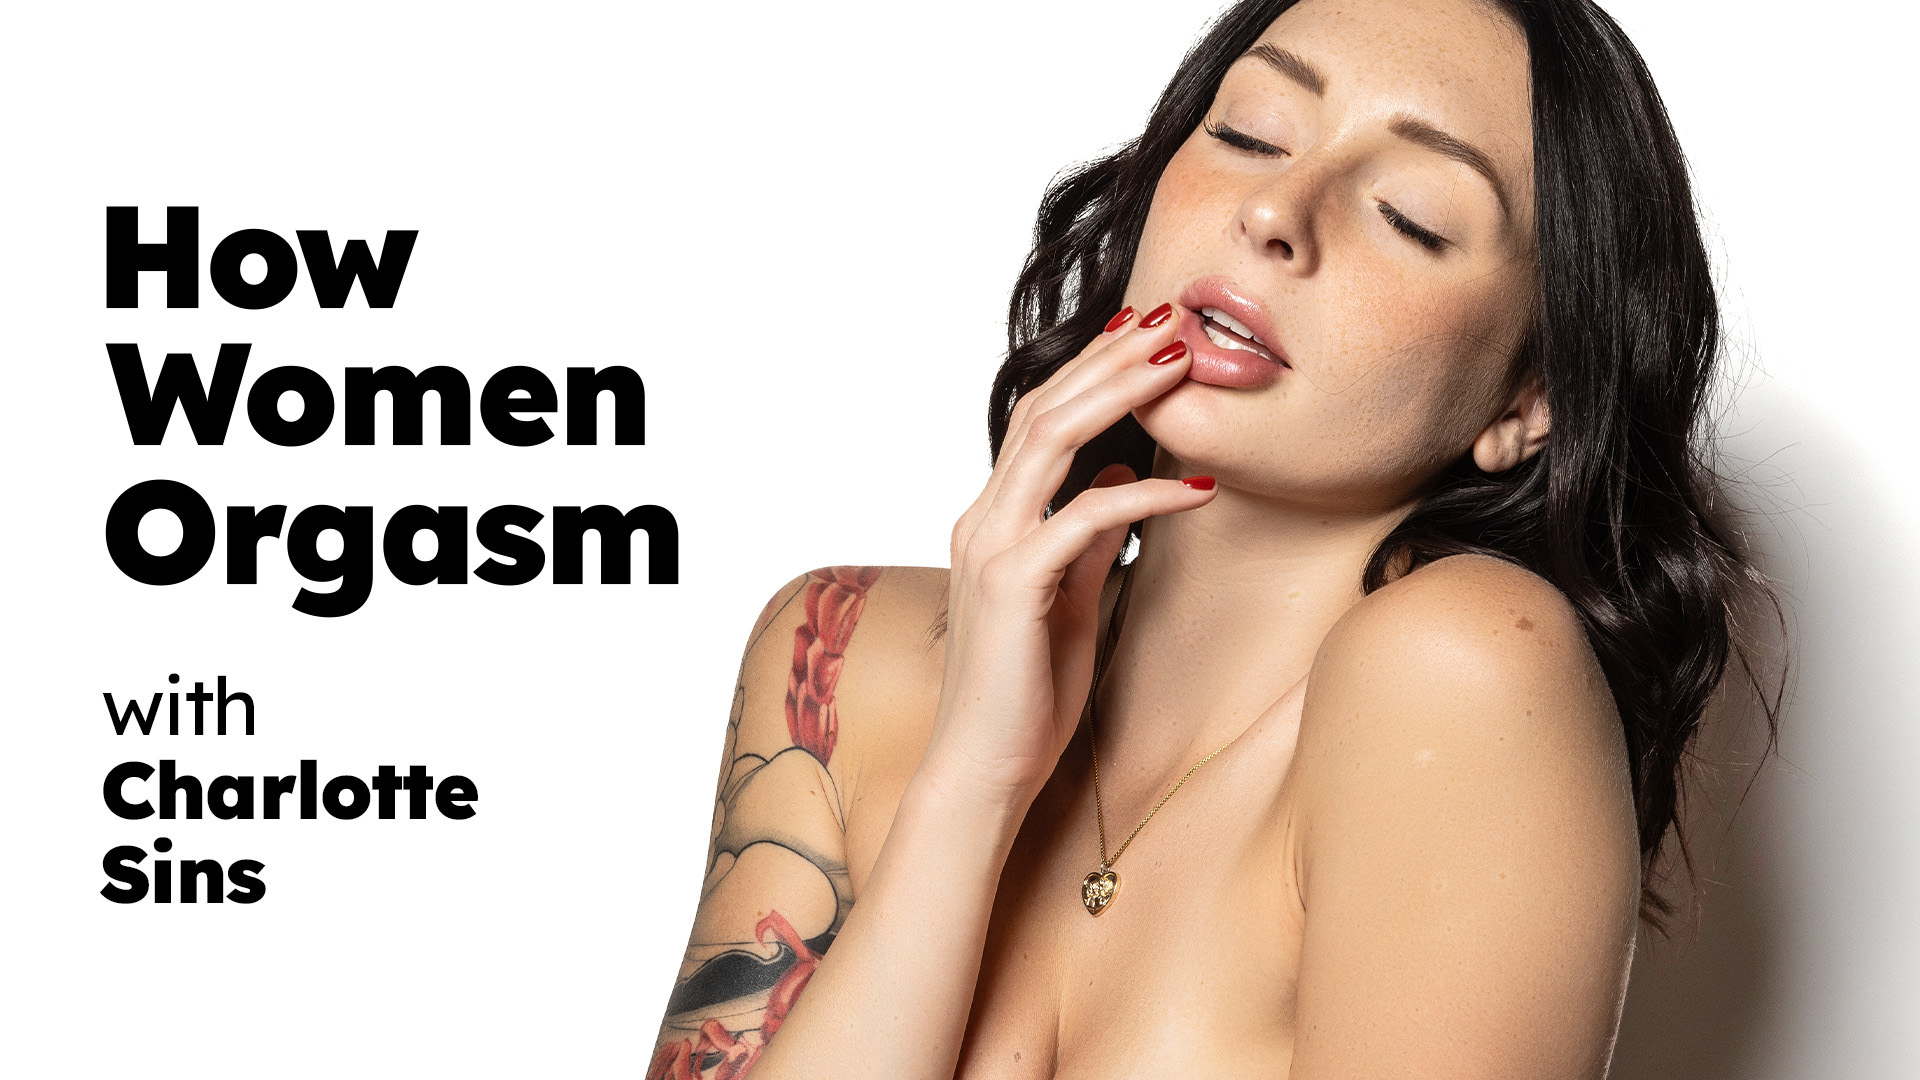 How Women Orgasm Charlotte Sins How Women Orgasm - Charlotte Sins